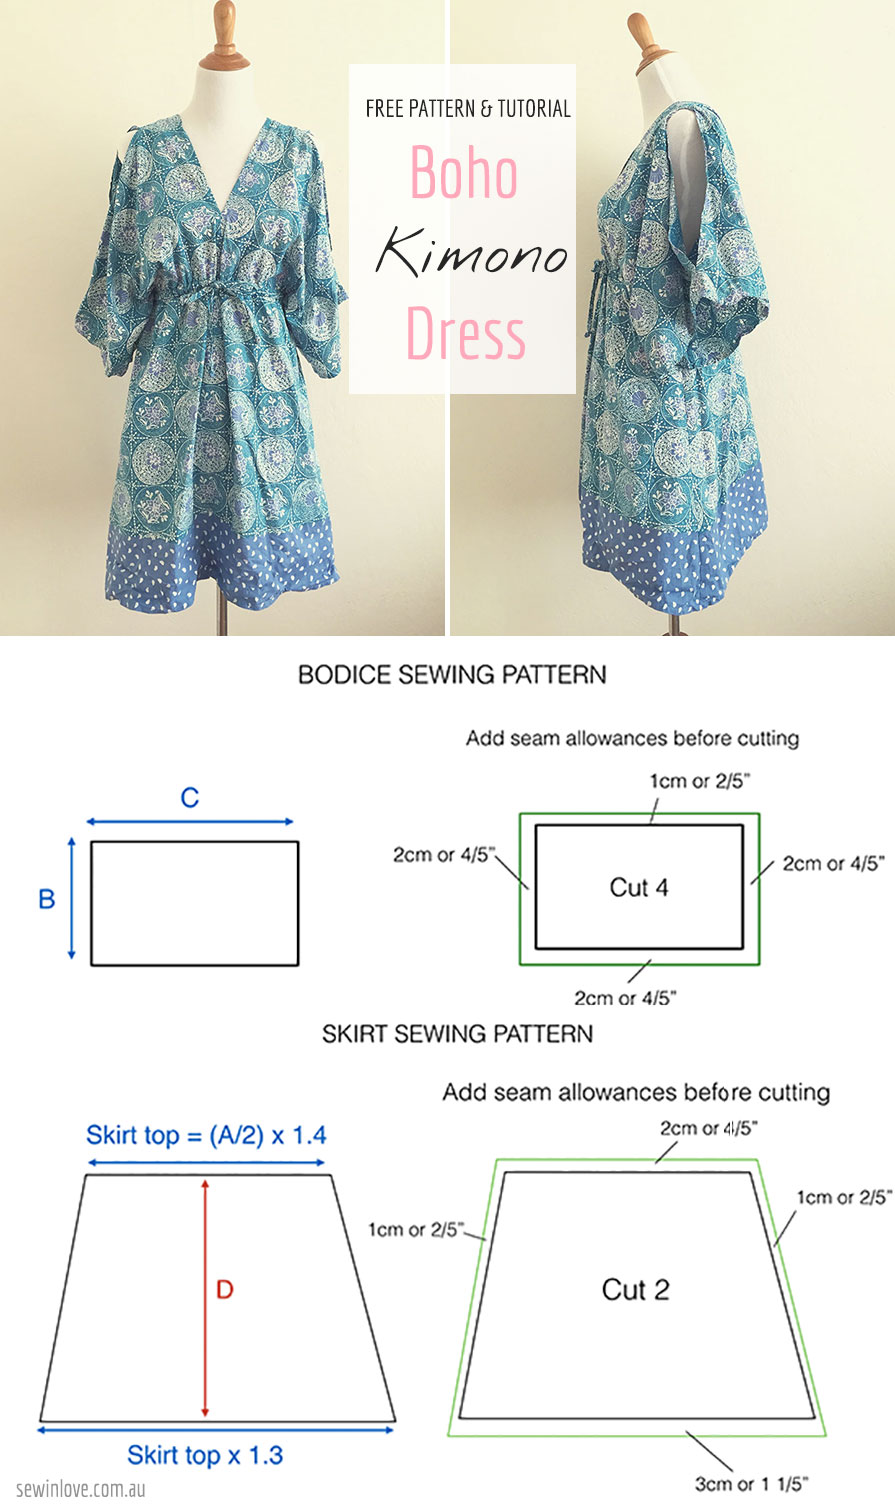 Free Printable Dress Sewing Patterns